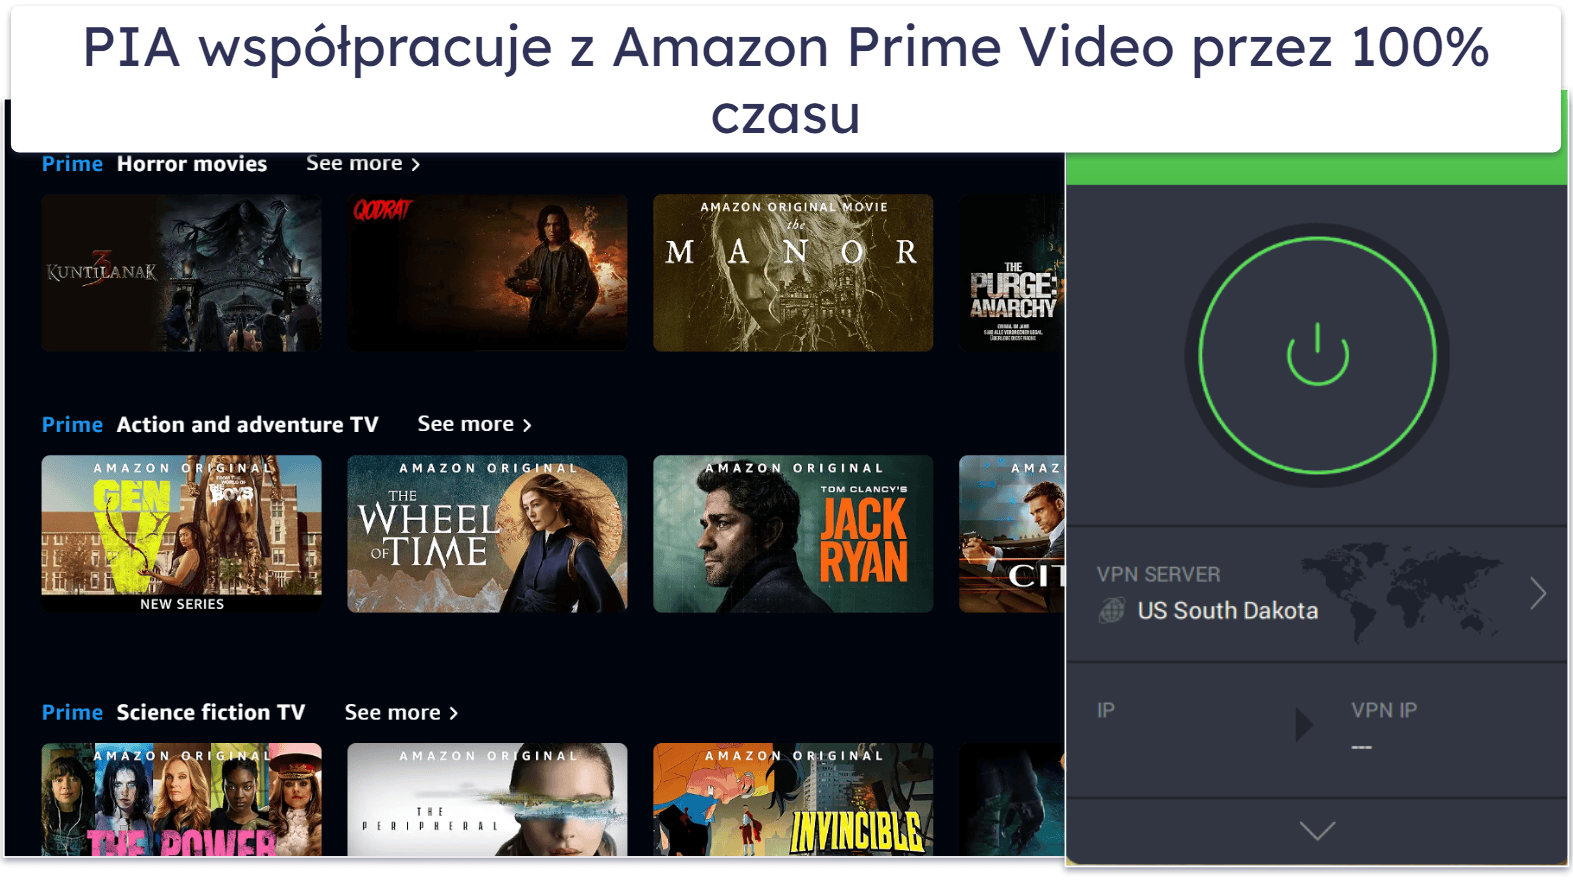 🥈2. Private Internet Access (PIA): Świetny do strumieniowania Amazon Prime Video na urządzeniach mobilnych